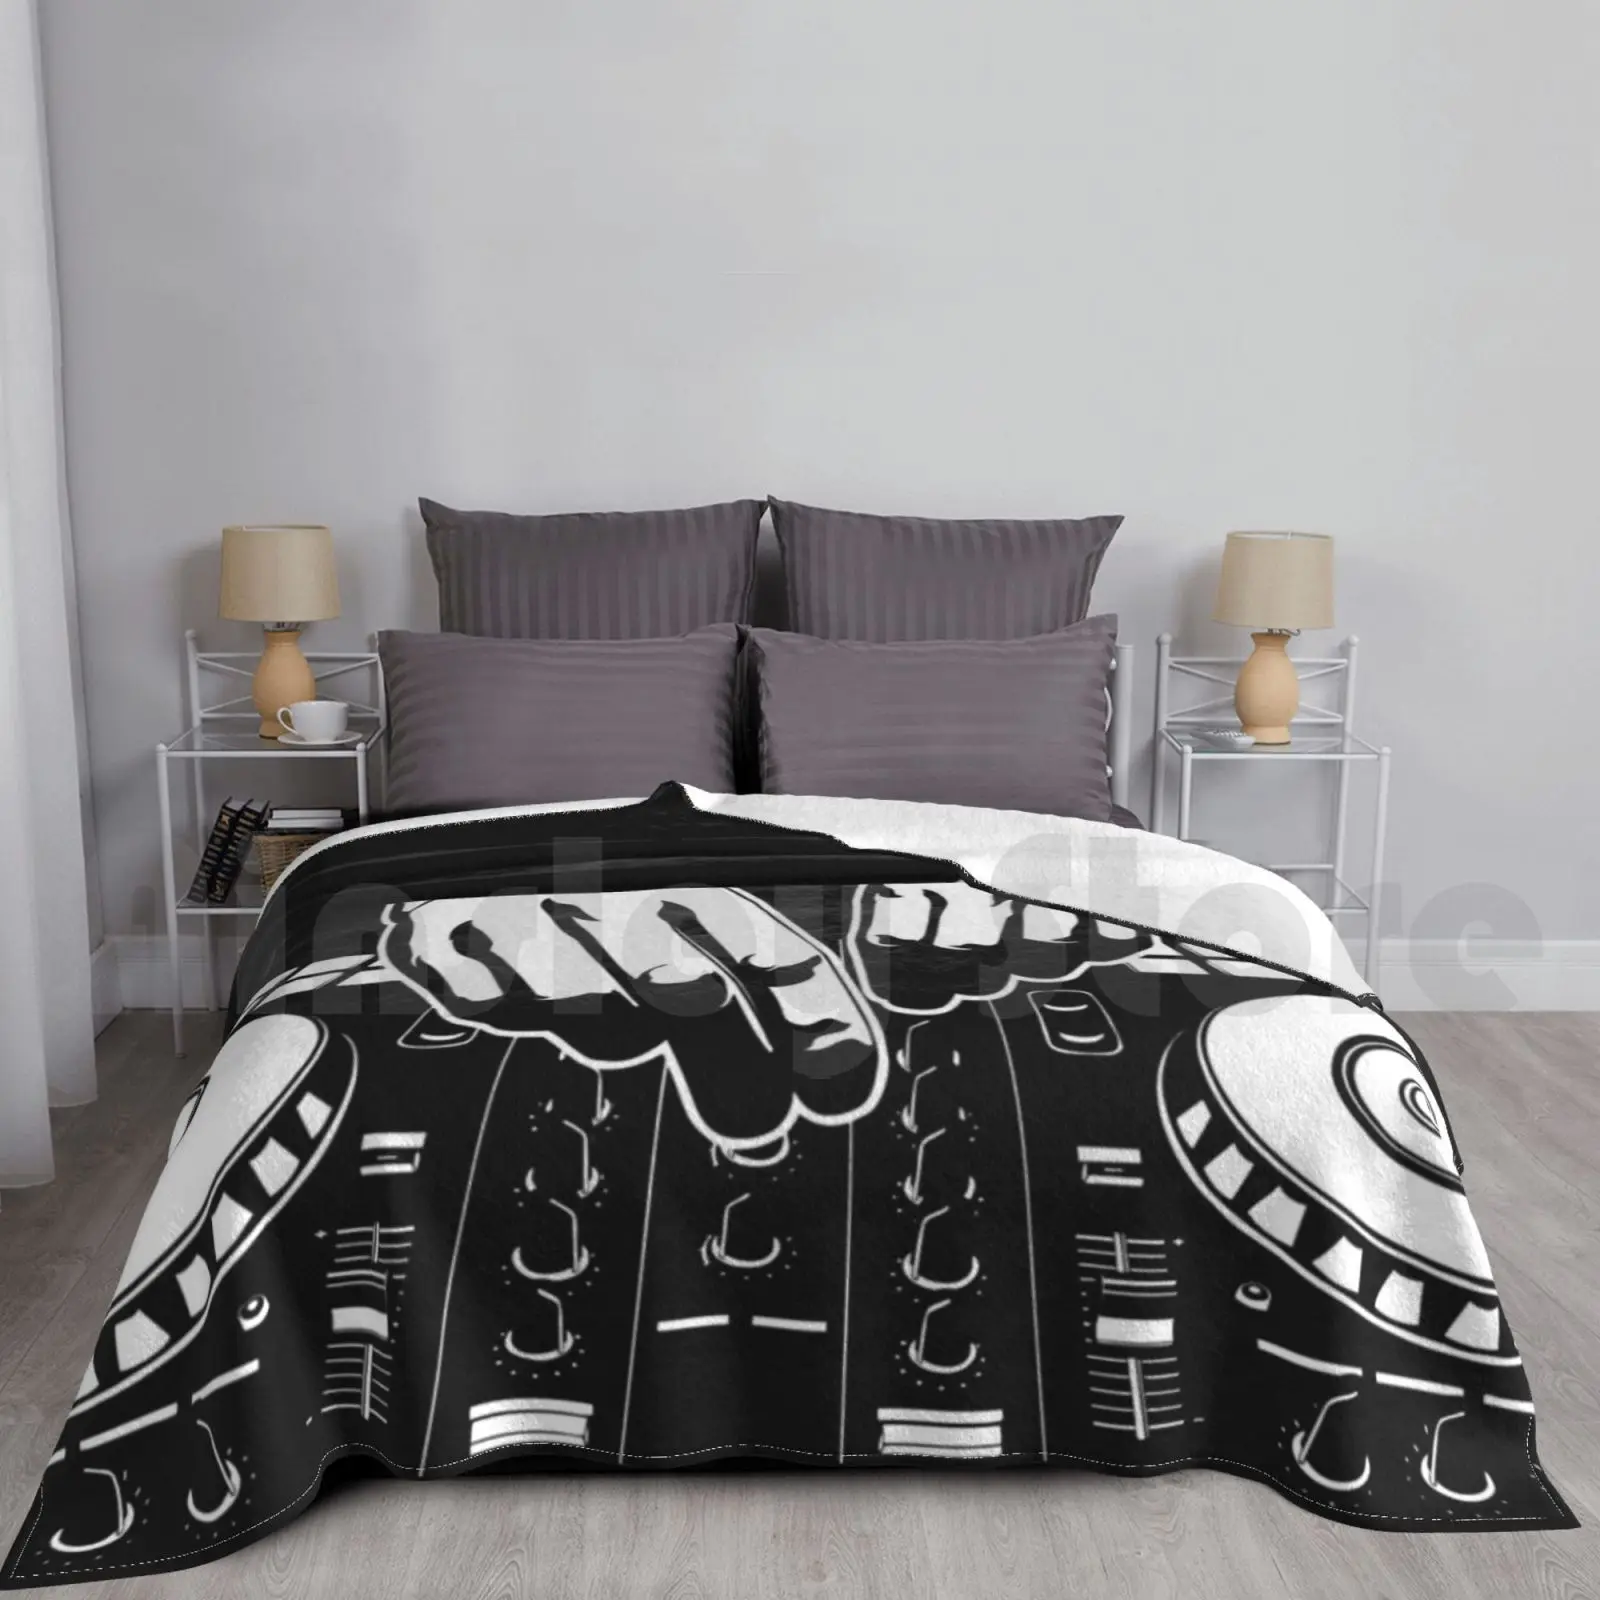 

Дисковое одеяло Dj для дивана-кровати для путешествий музыкальный Dj Edm дисковый джоки для дома музыка Музыка для любителей музыки 90s Детский вечеринка